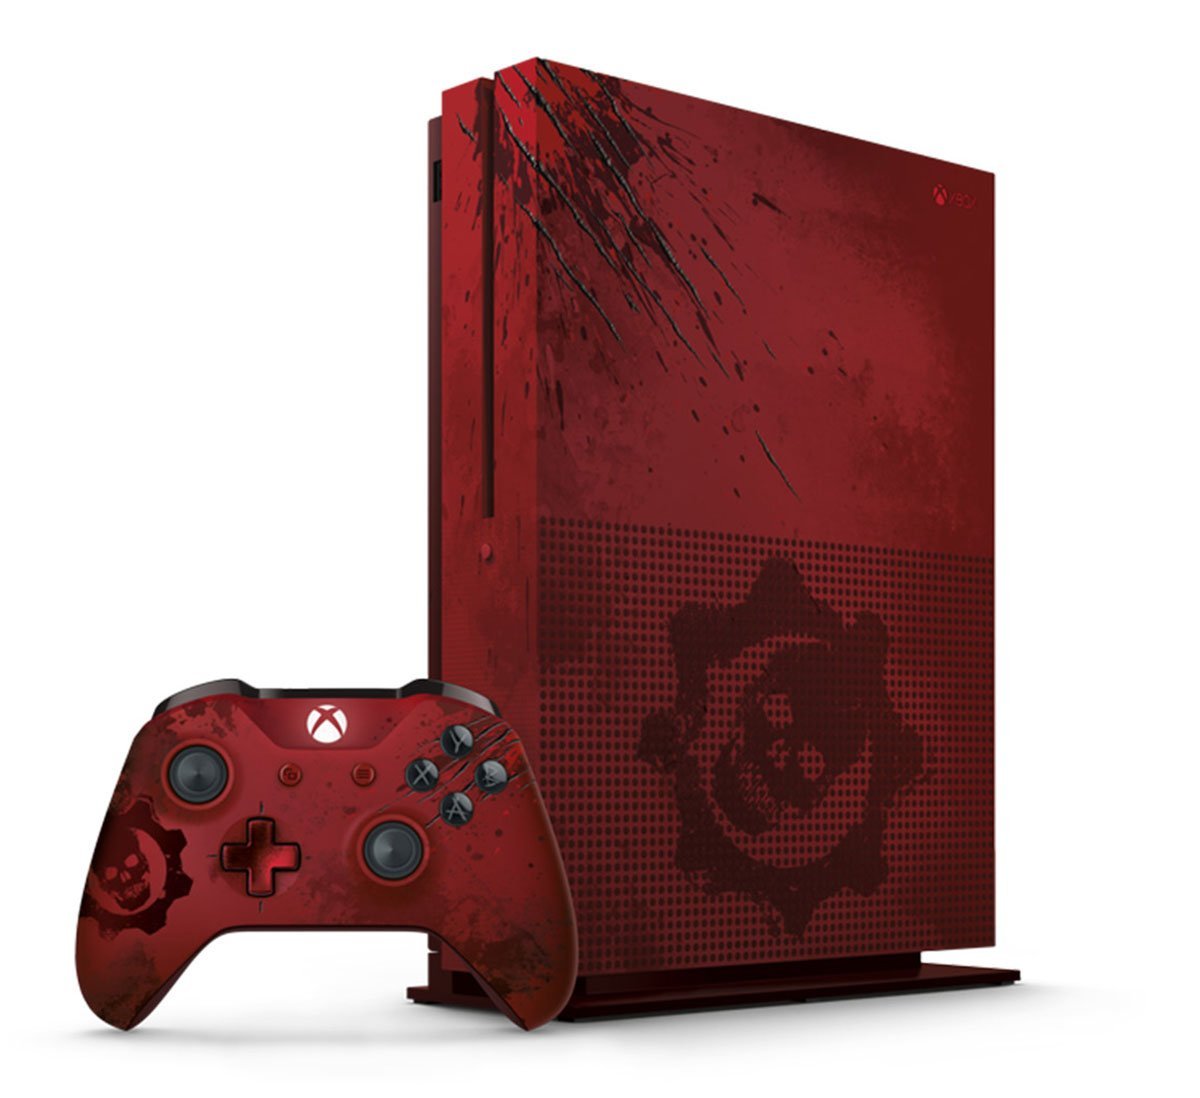 Mira la Xbox One S edición limitada de Gears of War 4